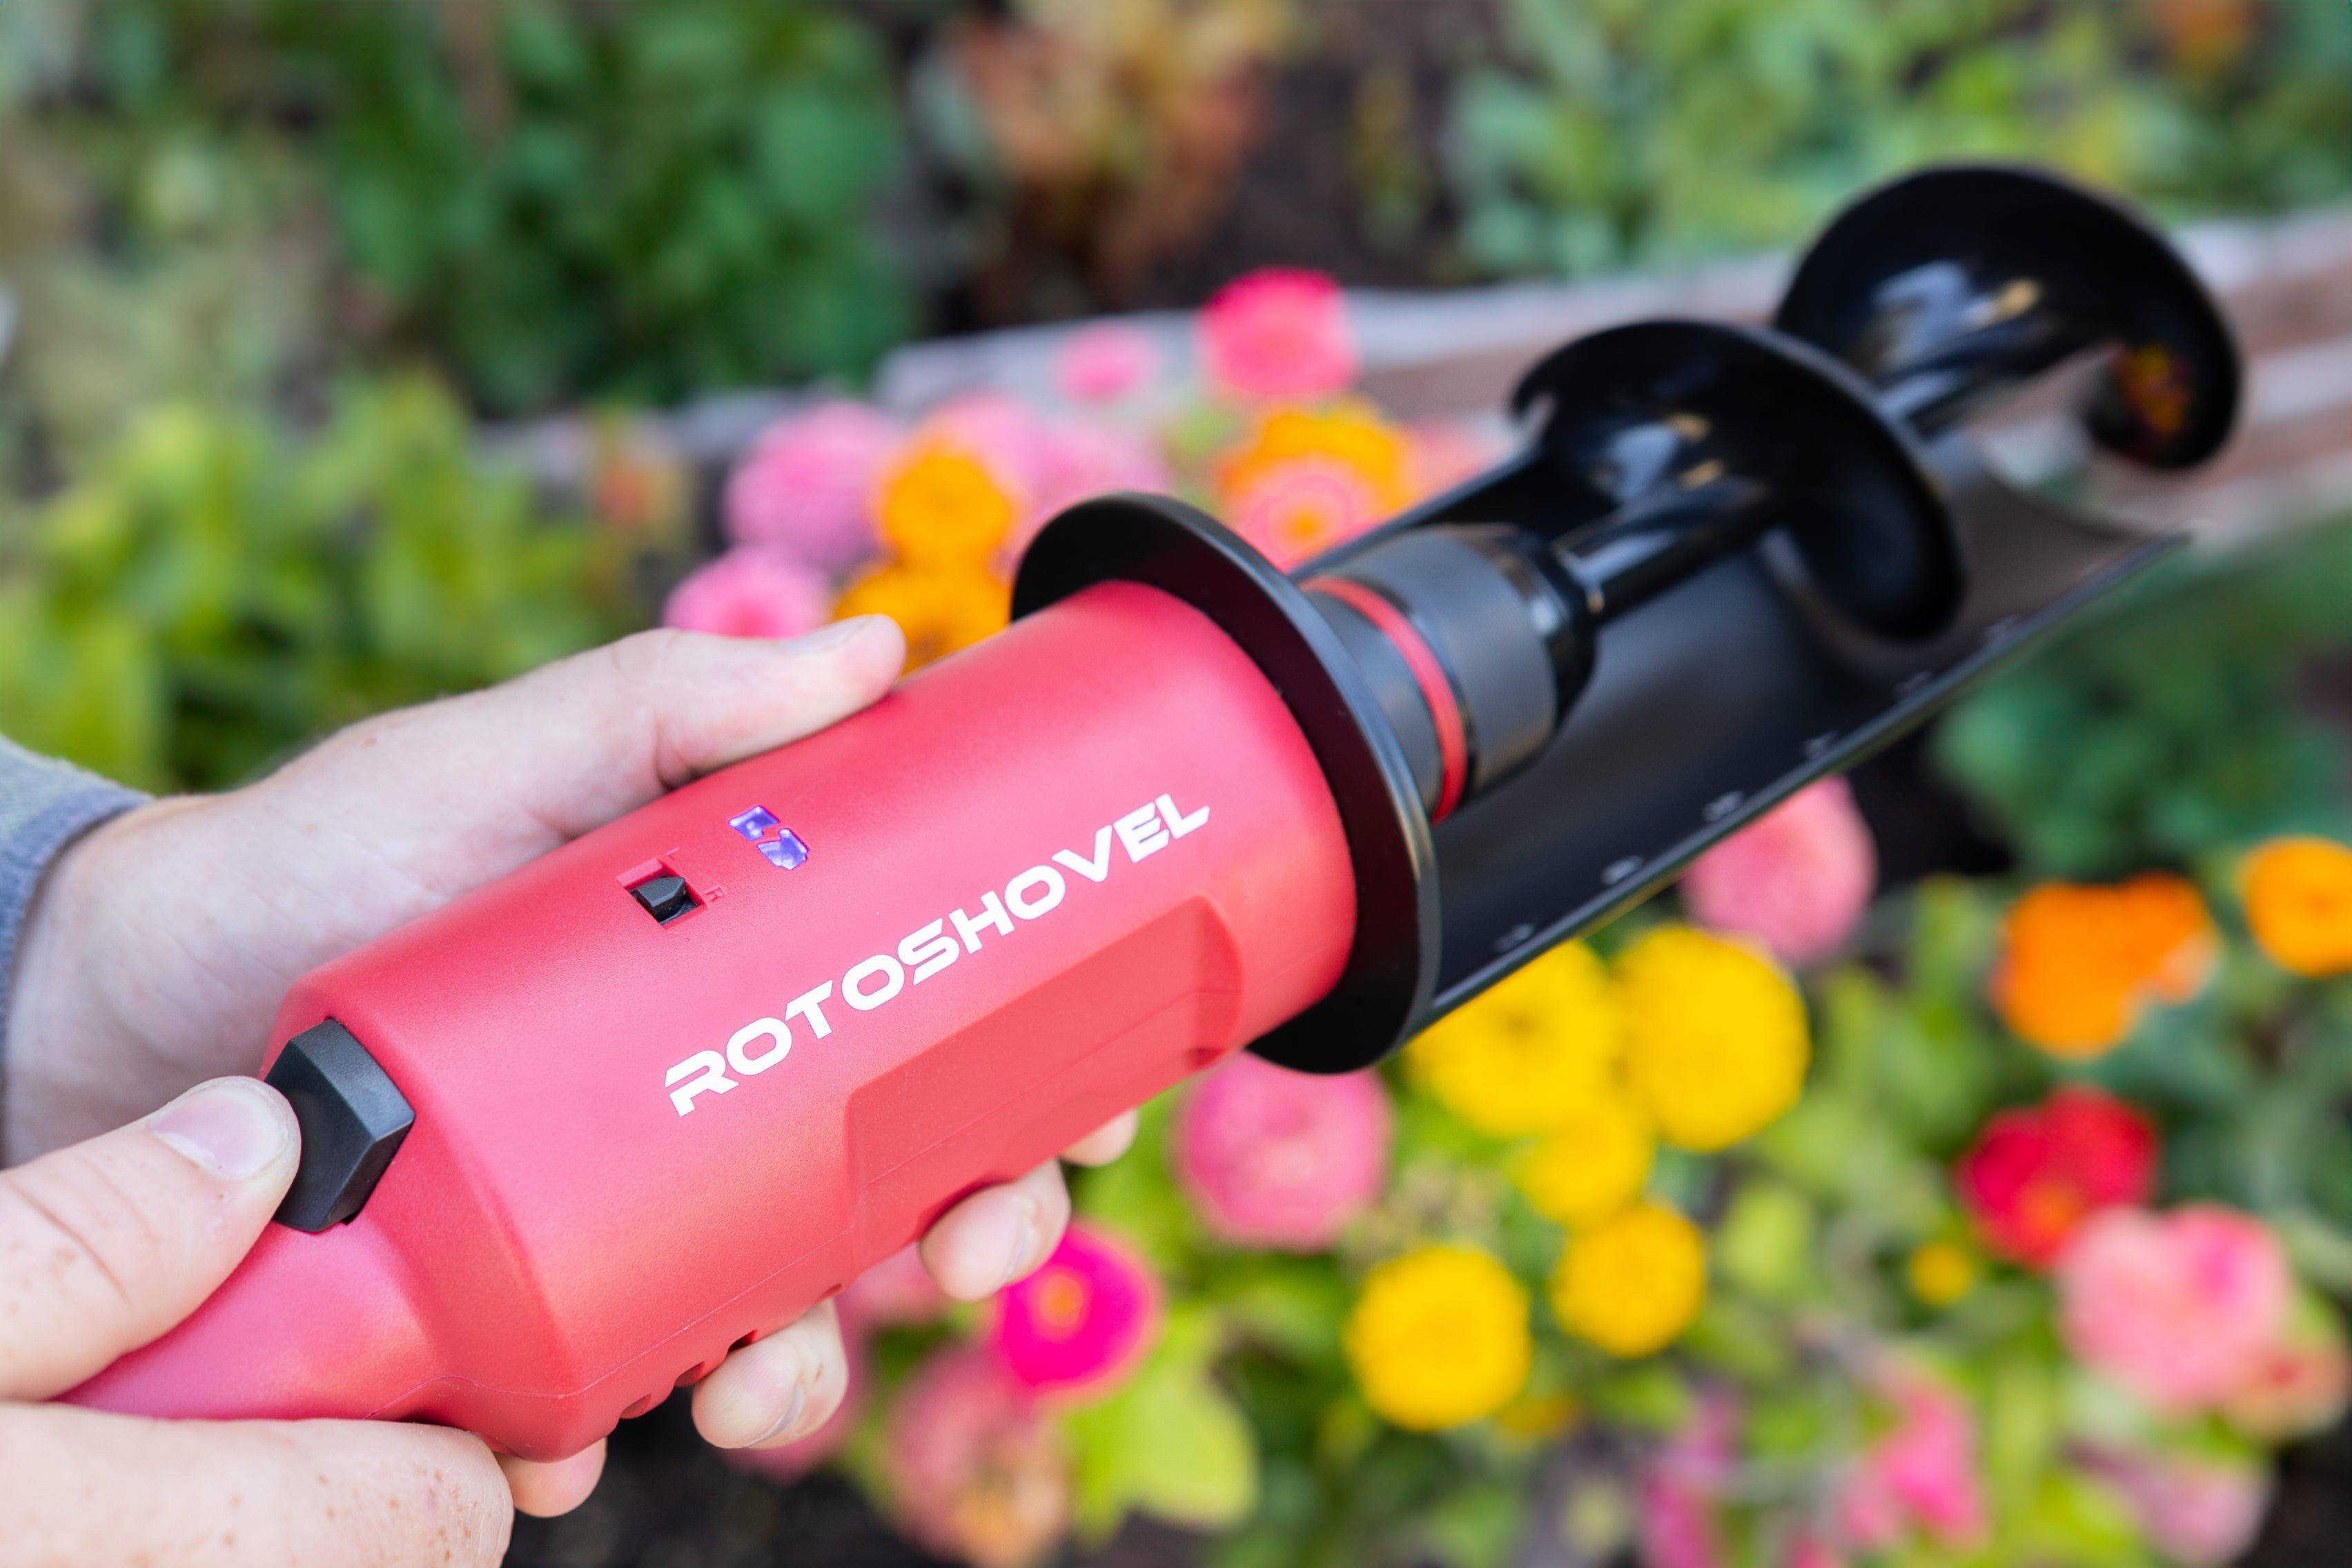 Rotoshovel - 5X Torque Handheld Automatic Shovel with Brushless Motor & Long-Lasting Battery